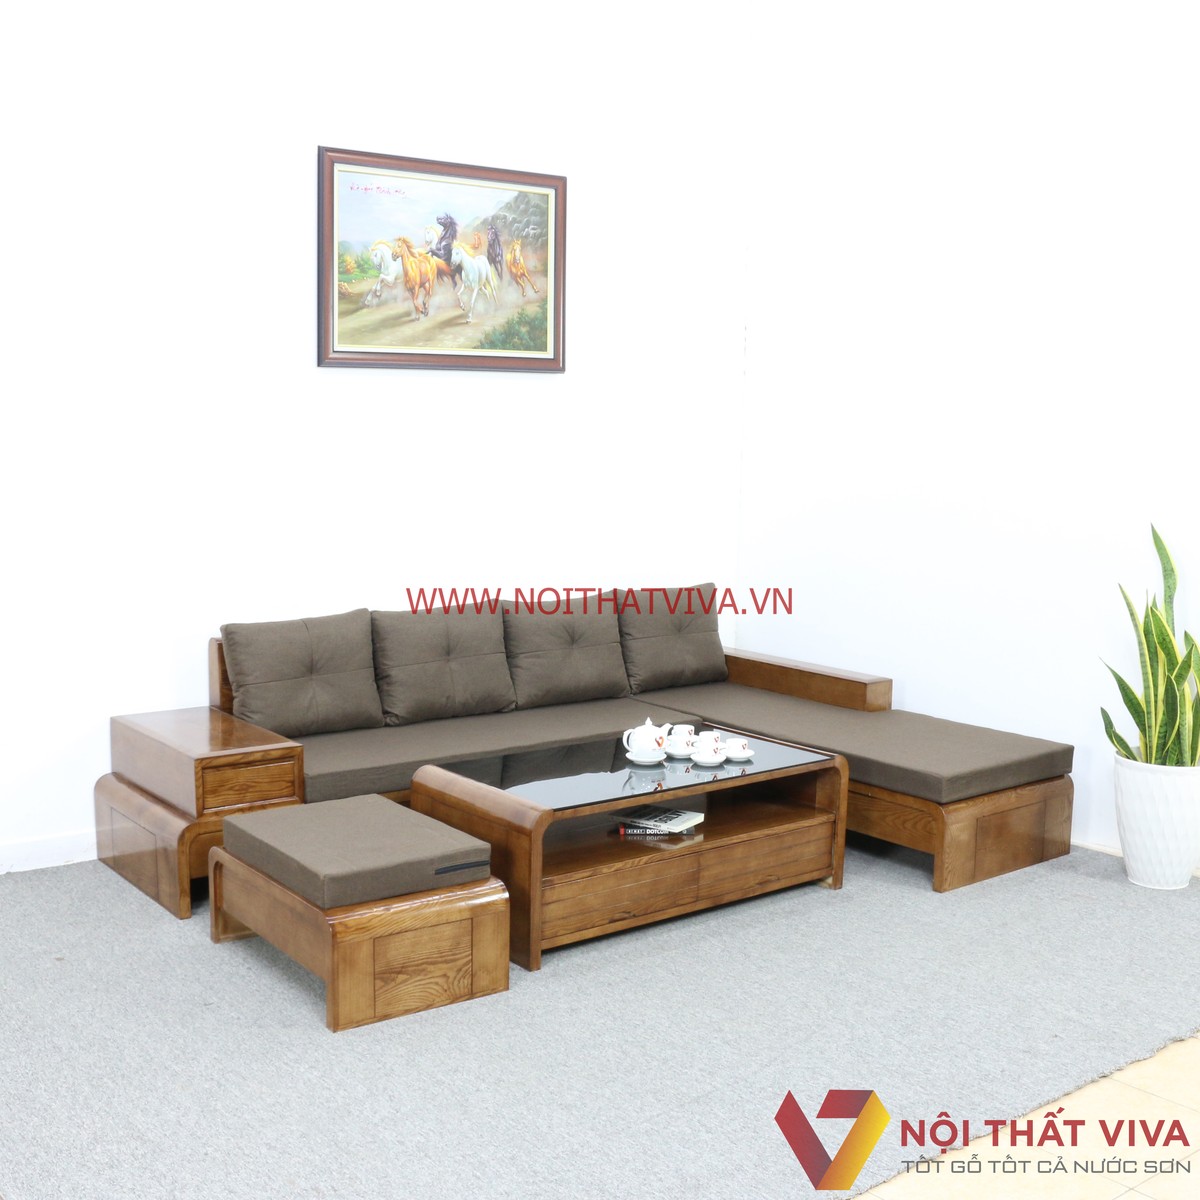 Bạn đang tìm kiếm một chiếc sofa gỗ tự nhiên với mức giá phải chăng? Chúng tôi hân hạnh giới thiệu đến bạn các mẫu sofa gỗ tự nhiên giá rẻ nhất trên thị trường. Chất liệu gỗ tự nhiên bền chắc, thiết kế đẹp mắt sẽ làm cho không gian phòng khách của bạn trở nên ấn tượng hơn. Dù là bạn đang tìm kiếm một chiếc sofa riêng lẻ hay bộ sưu tập đầy đủ, chúng tôi không làm bạn thất vọng.